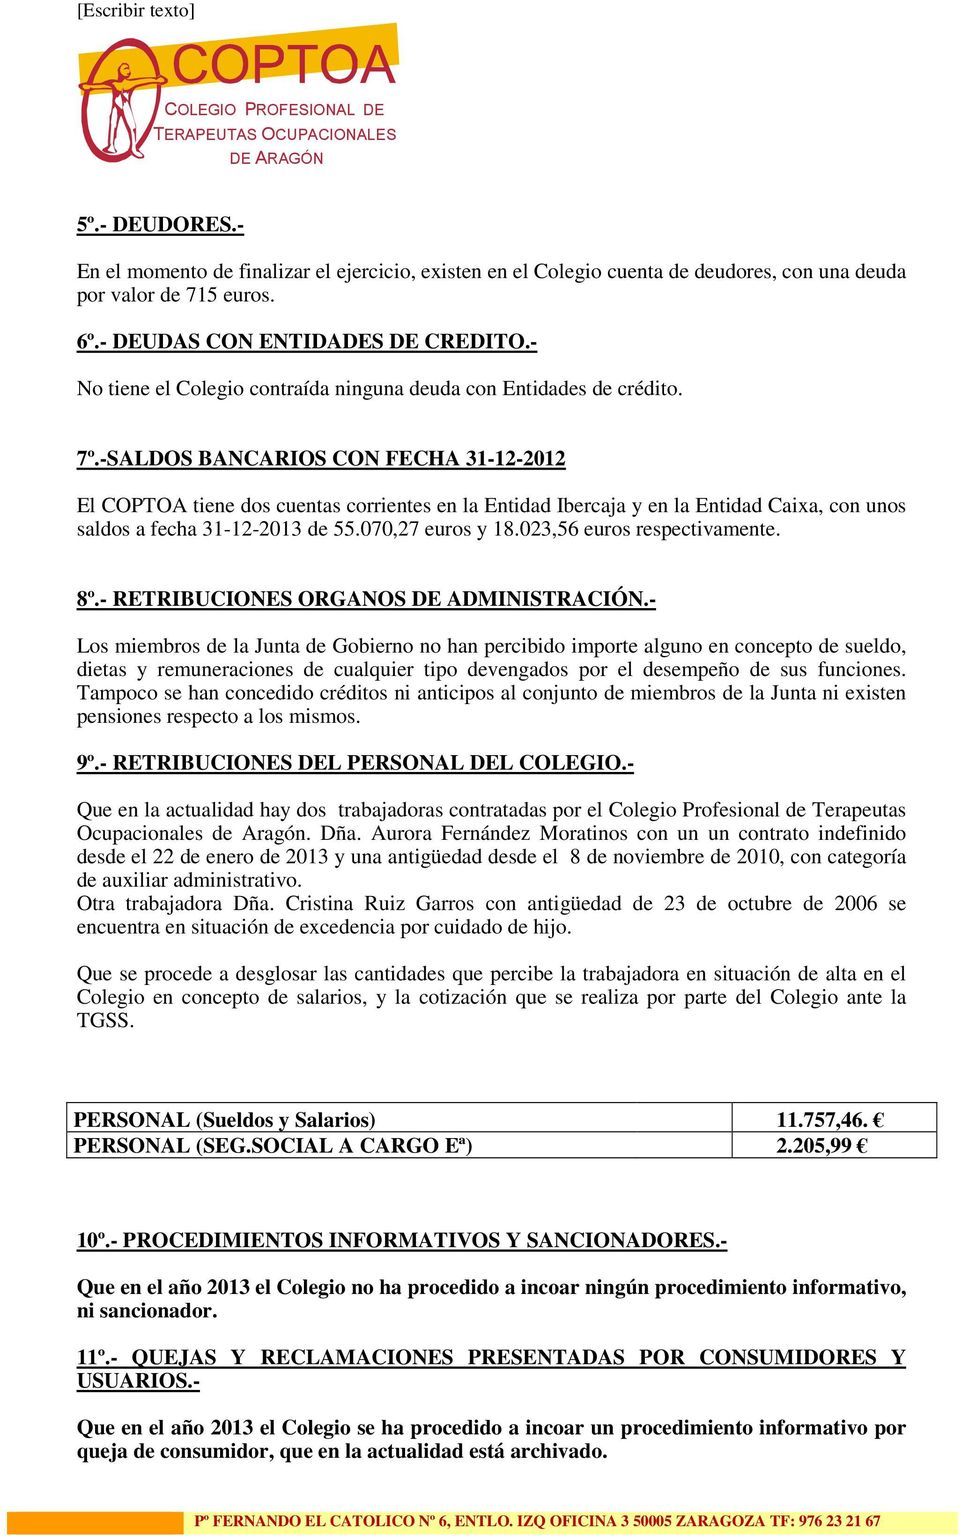 -SALDOS BANCARIOS CON FECHA 31-12-2012 El COPTOA tiene dos cuentas corrientes en la Entidad Ibercaja y en la Entidad Caixa, con unos saldos a fecha 31-12-2013 de 55.070,27 euros y 18.